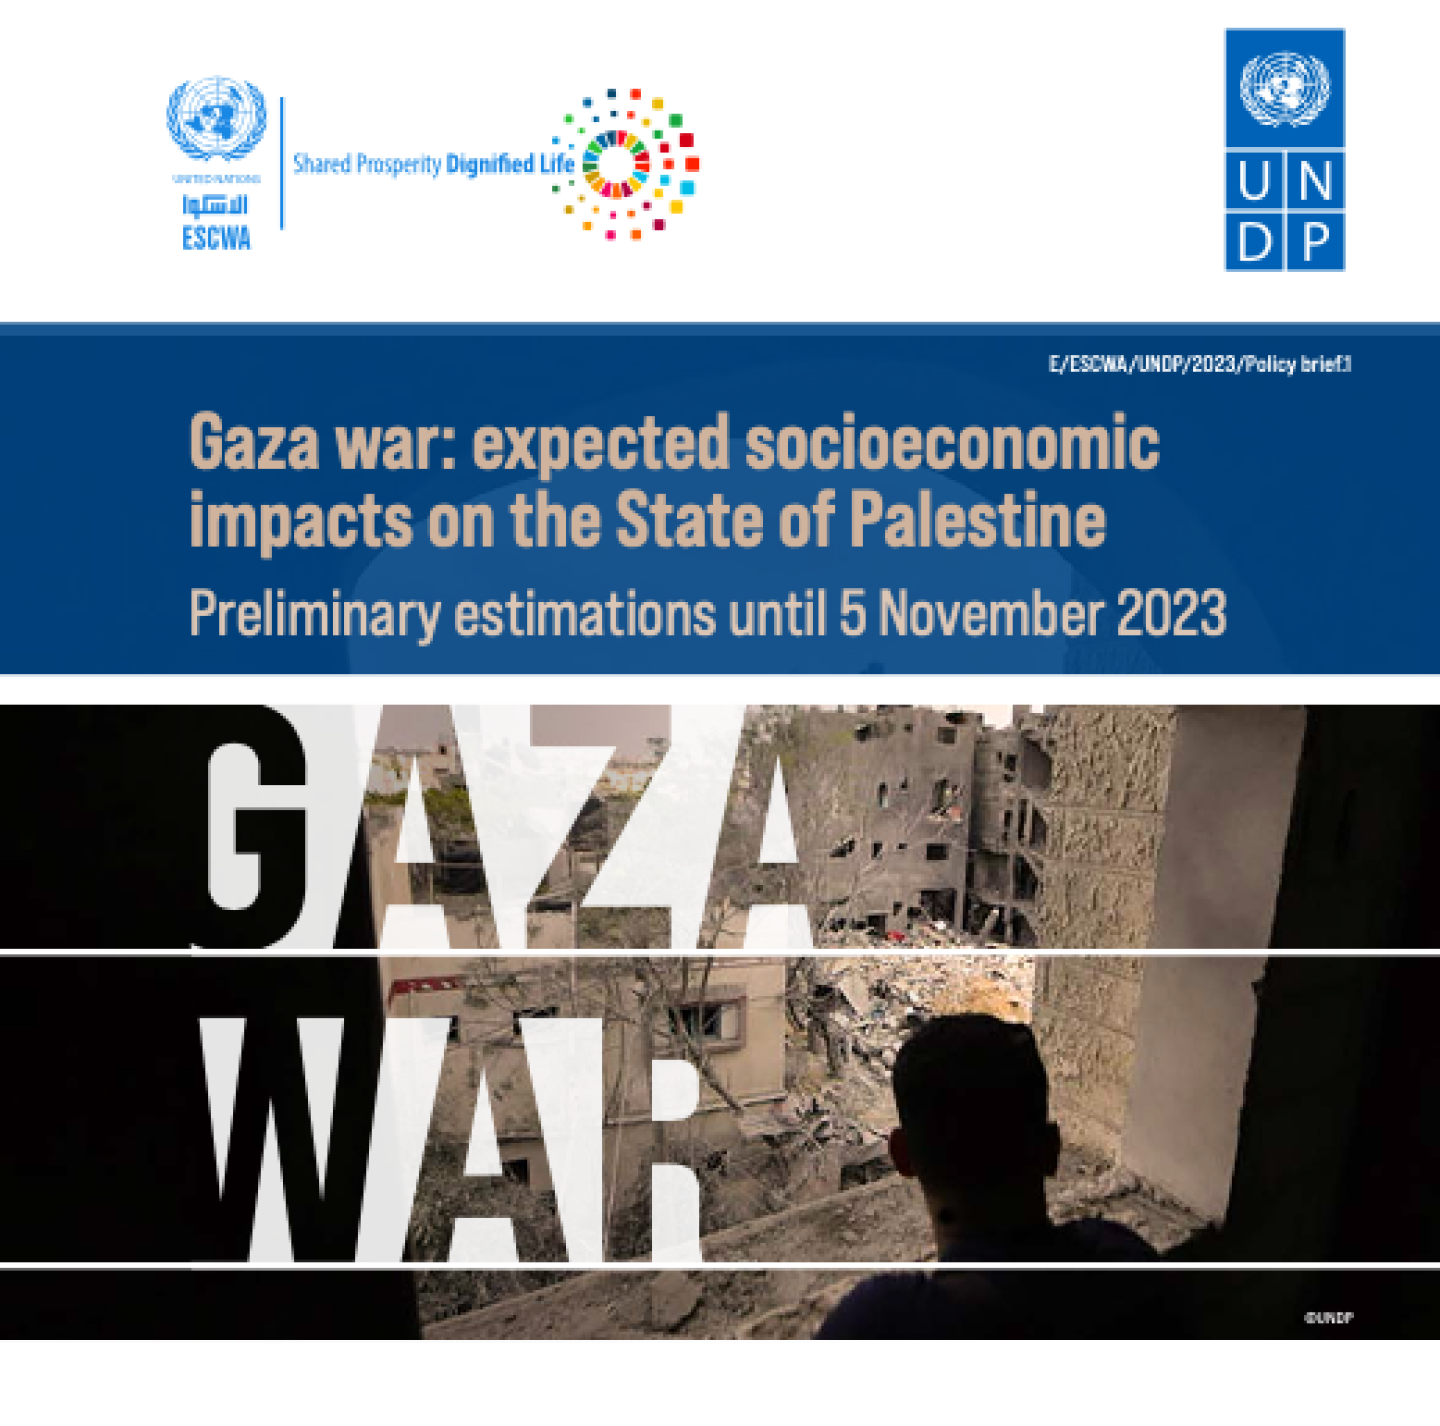 حرب غزة: الآثار الاجتماعية والاقتصادية المتوقعة على فلسطين